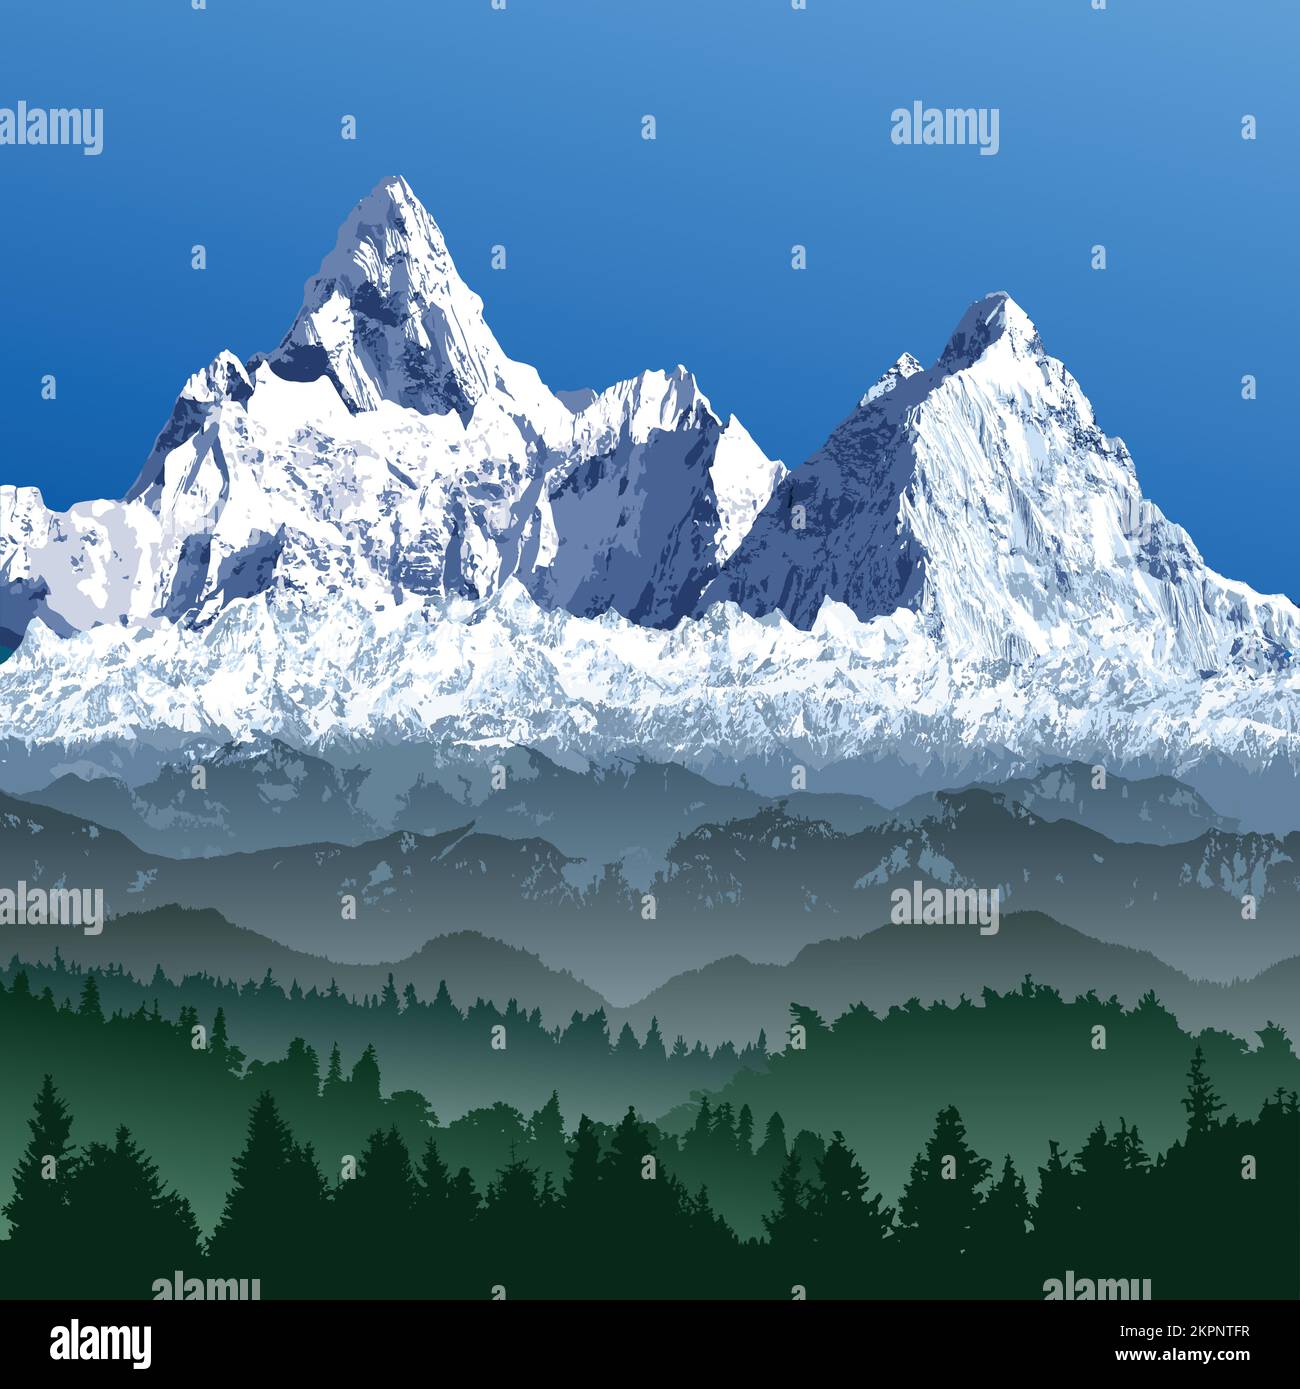 Grande chaîne de montagnes de l'Himalaya, illustration vectorielle des montagnes de l'Himalaya, montagne enneigée de couleur blanche et bleue avec bois Illustration de Vecteur